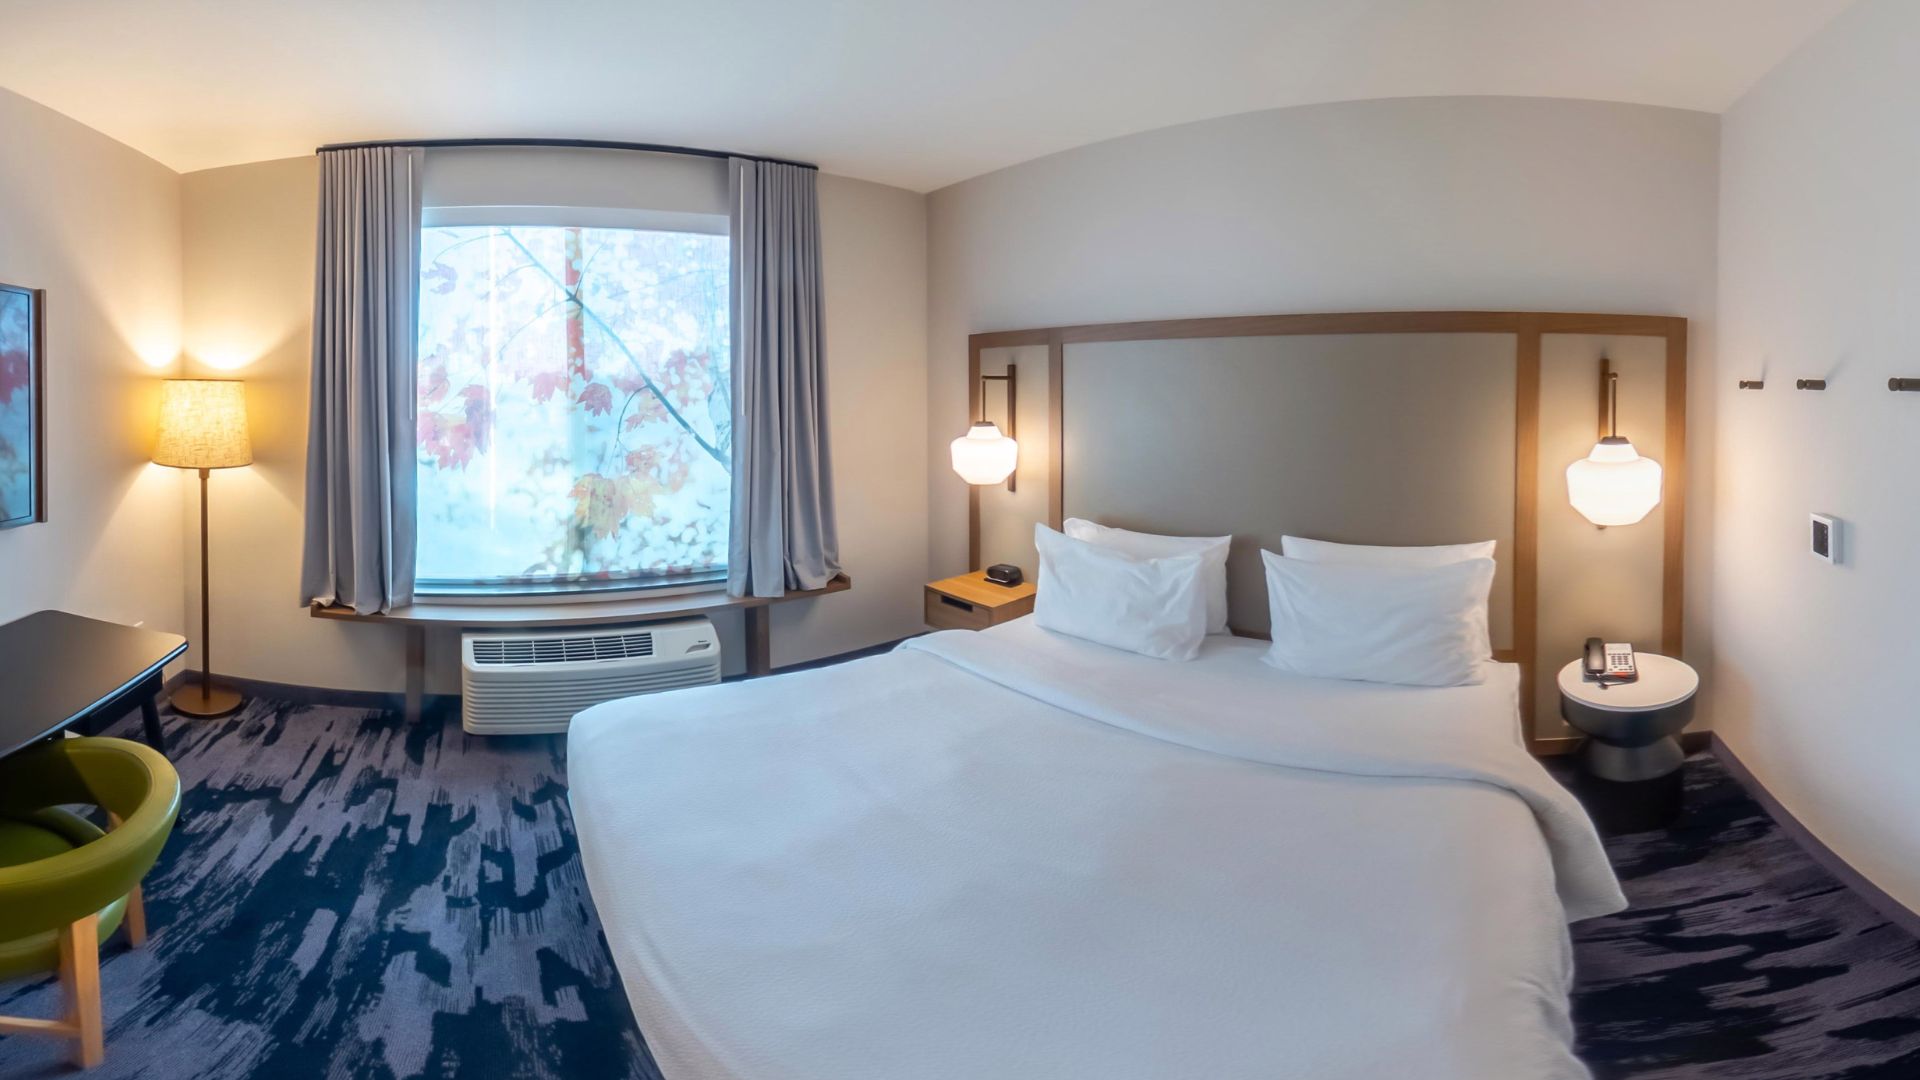 Panoramic Bedroom View of Fairfield Inn & Suites by Marriott - Lodi.